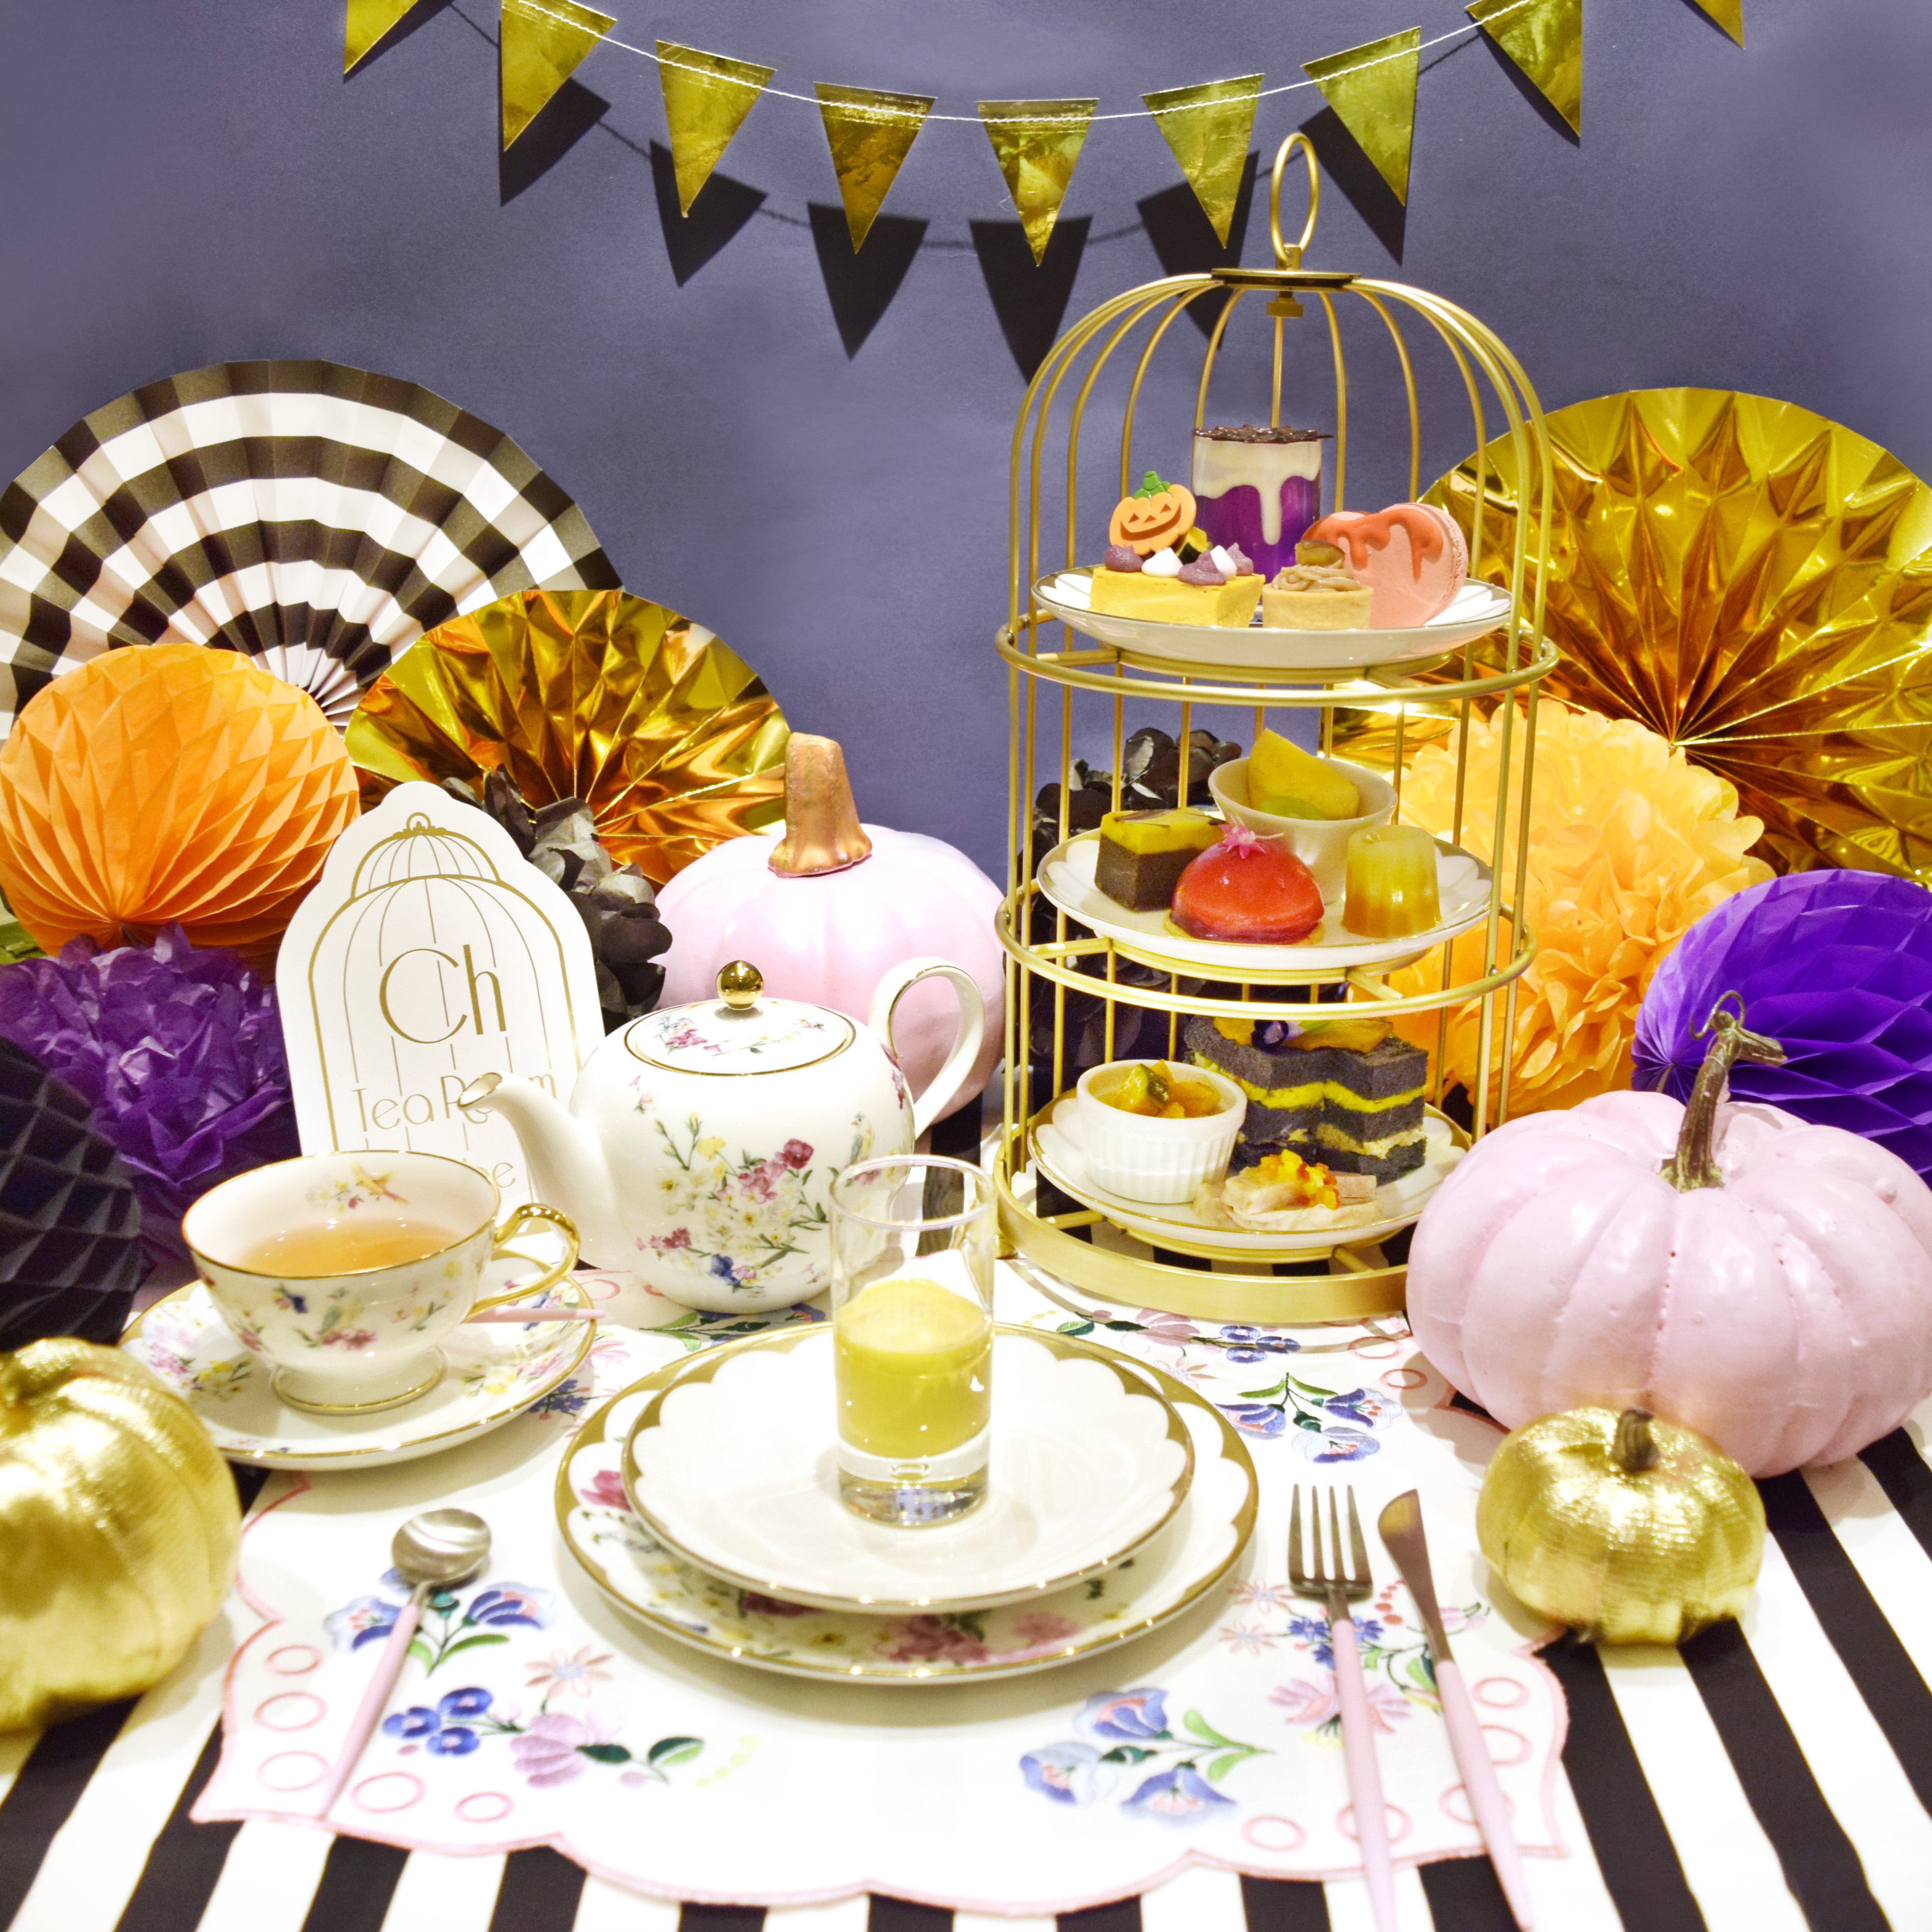 Ch Tea Room Kobe Zuccaのスペシャルコラボアフタヌーンティーが期間限定で登場 最高級品種 栗マロンかぼちゃ を使ったスペシャルメニューをハロウィンバージョンでお楽しみいただけます Prでっせ